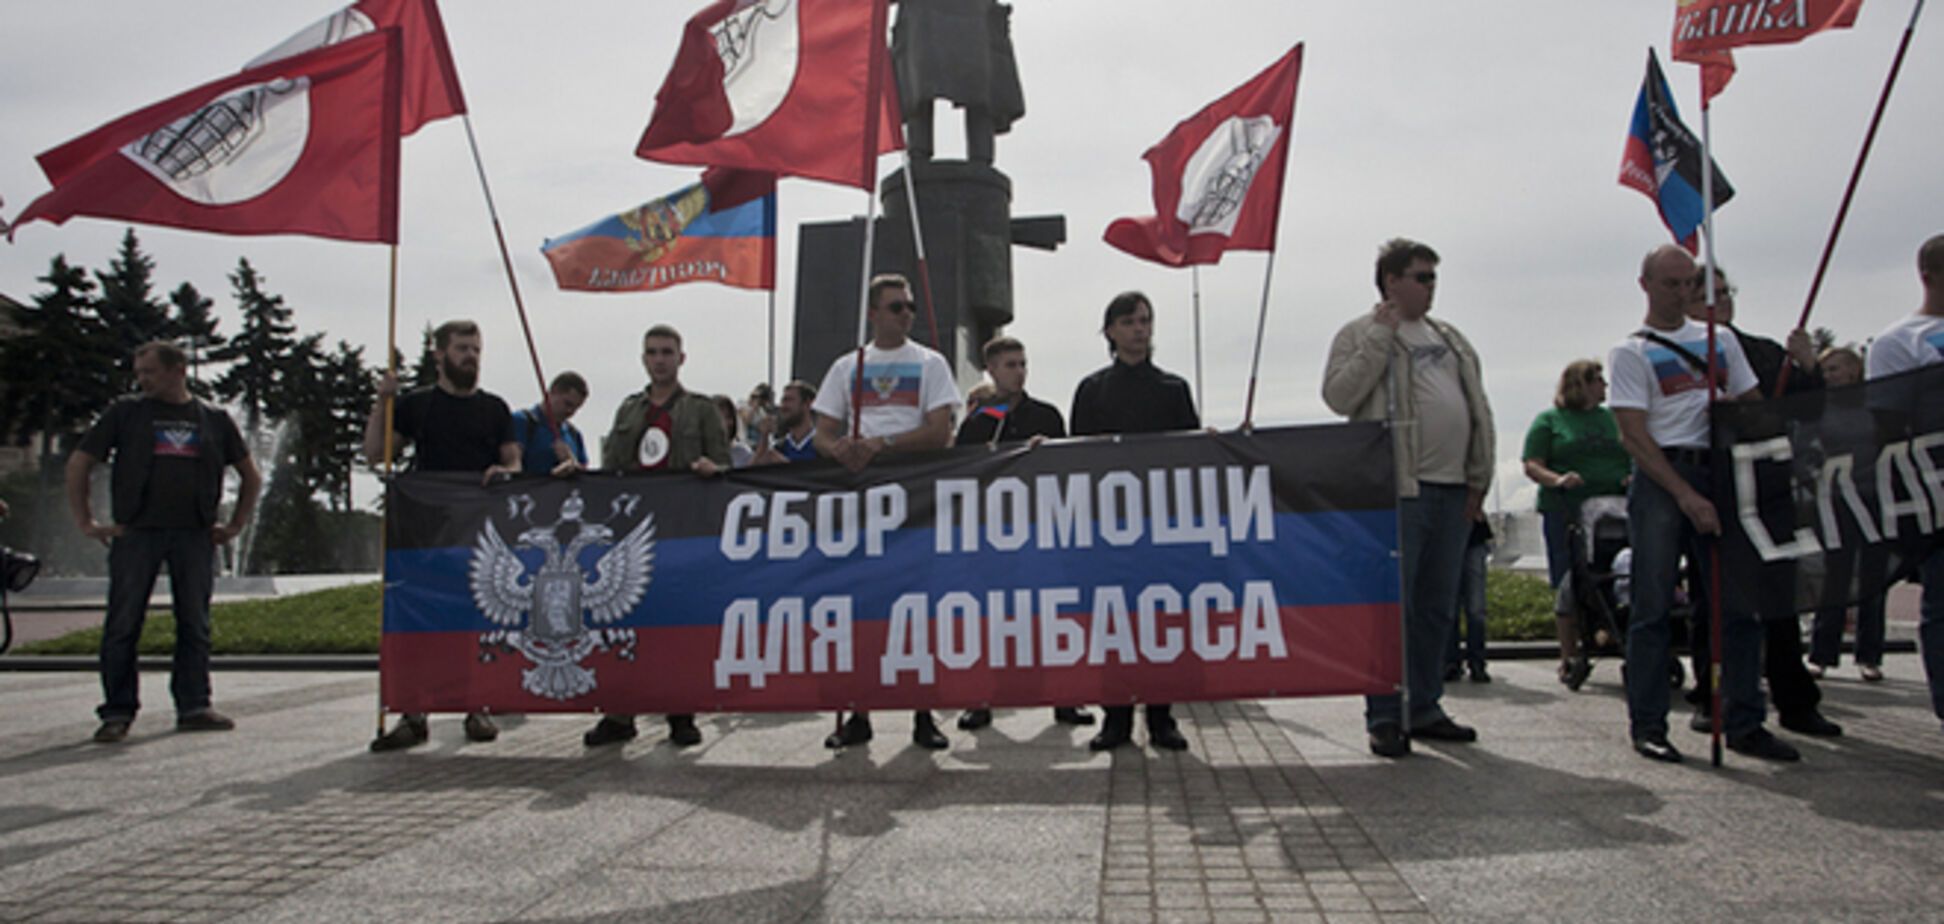 Власти российского Белгорода запретили 'русский марш за Новороссию'